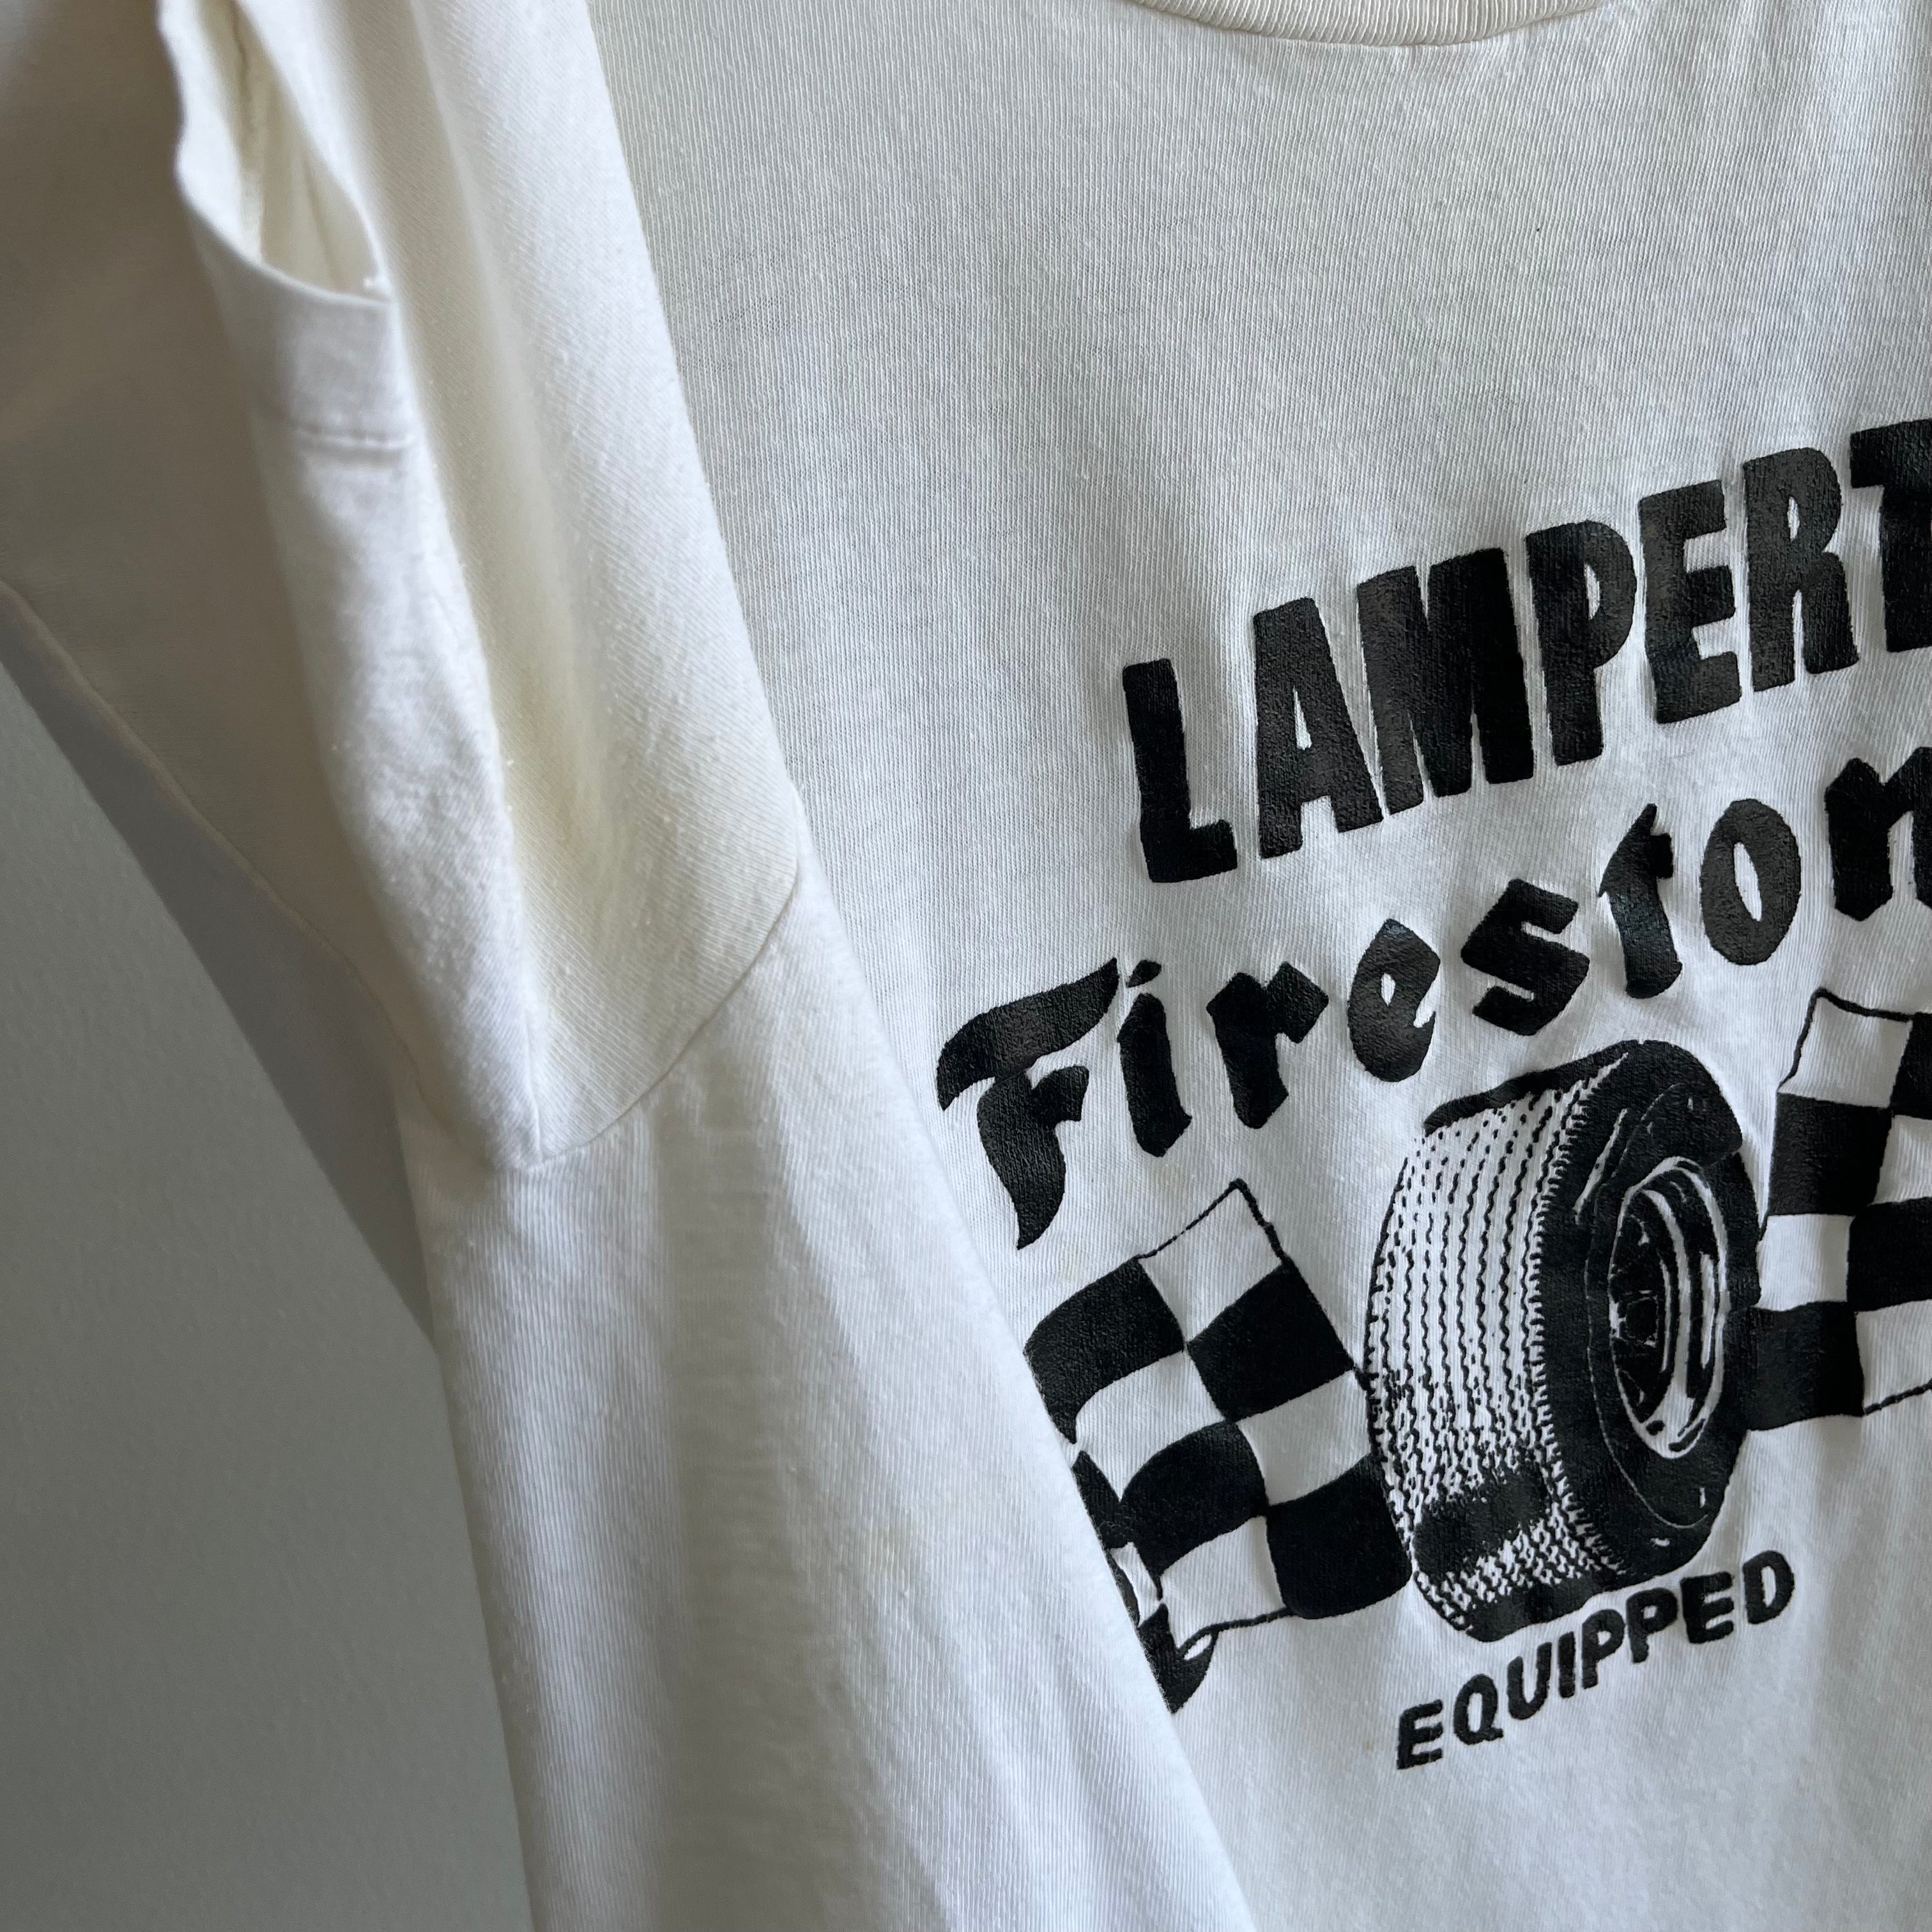 1970/80s Lampert Firestone Racing Division, St. Louis, Mo.